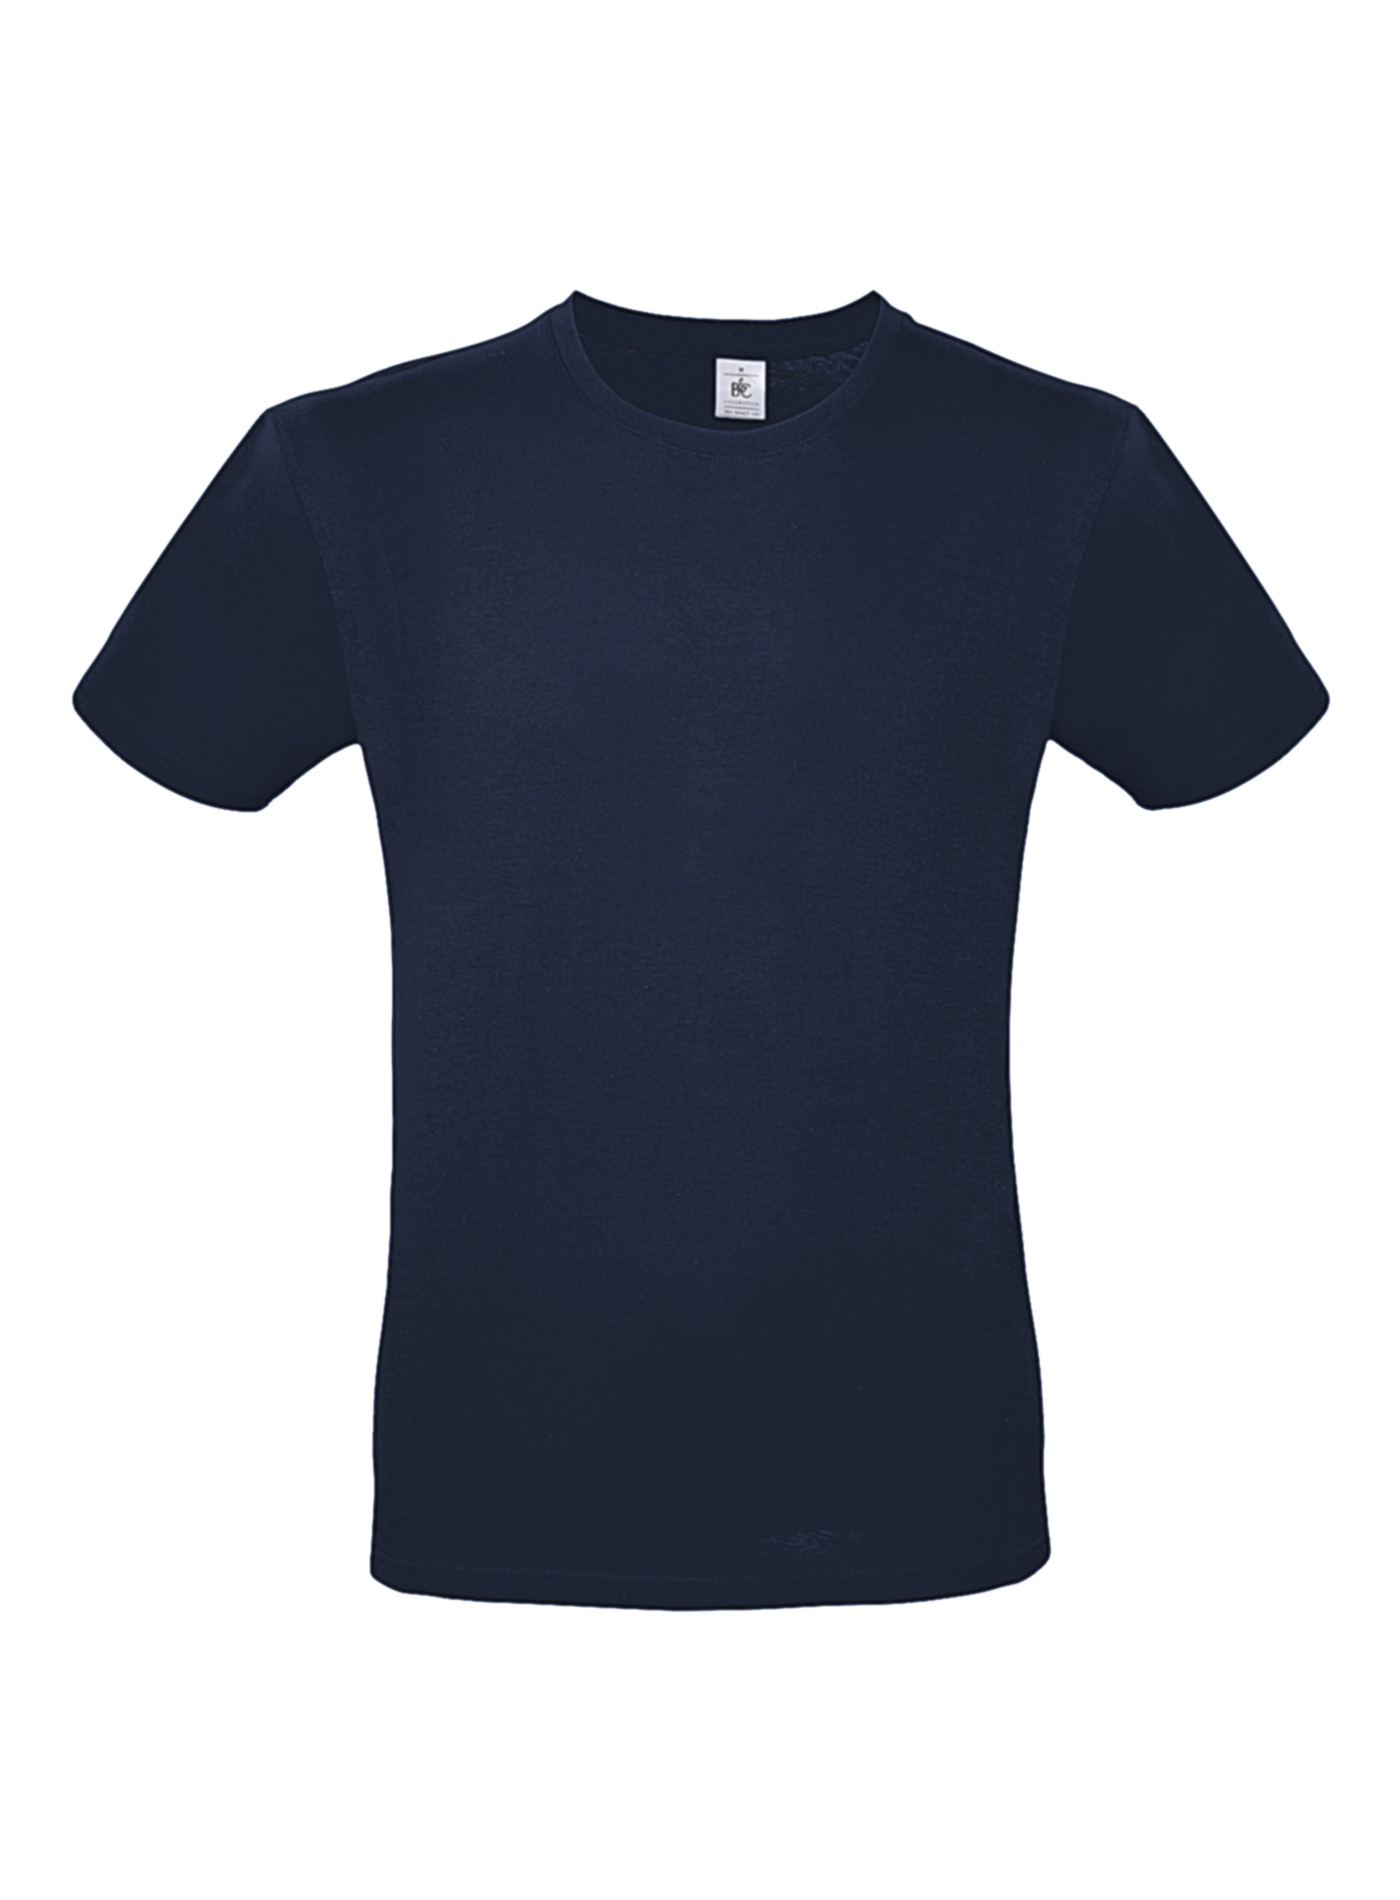 Pánské tričko B&C - Námořní modrá M